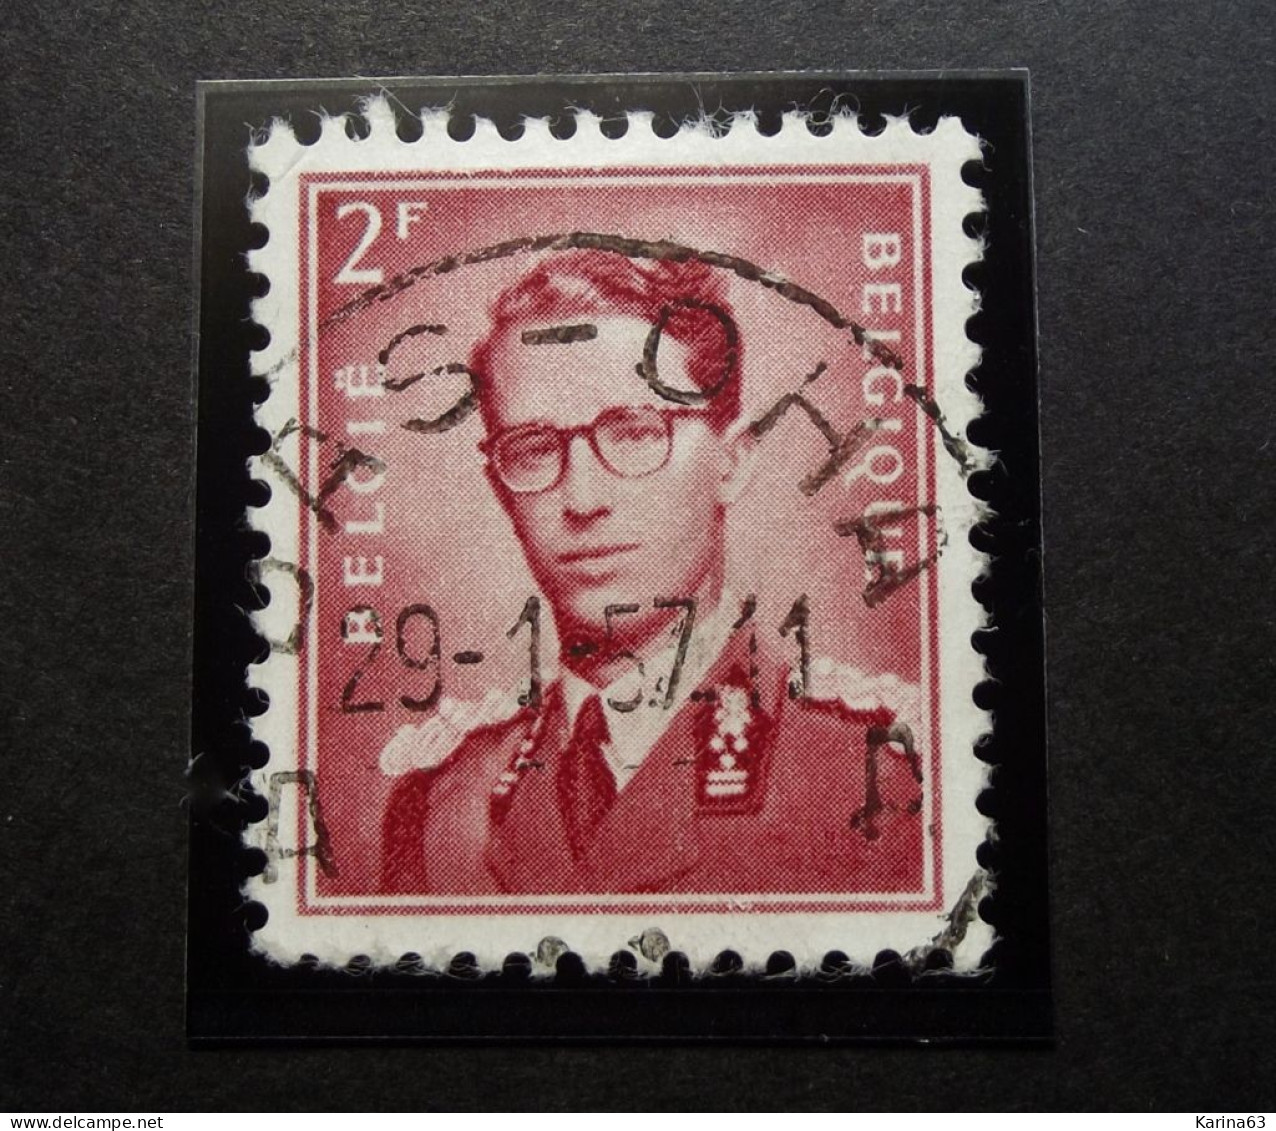 Belgie Belgique - 1953 -  OPB/COB  N° 925 - 2 F  - Obl. Central - BAS OHA - 1957 - Used Stamps